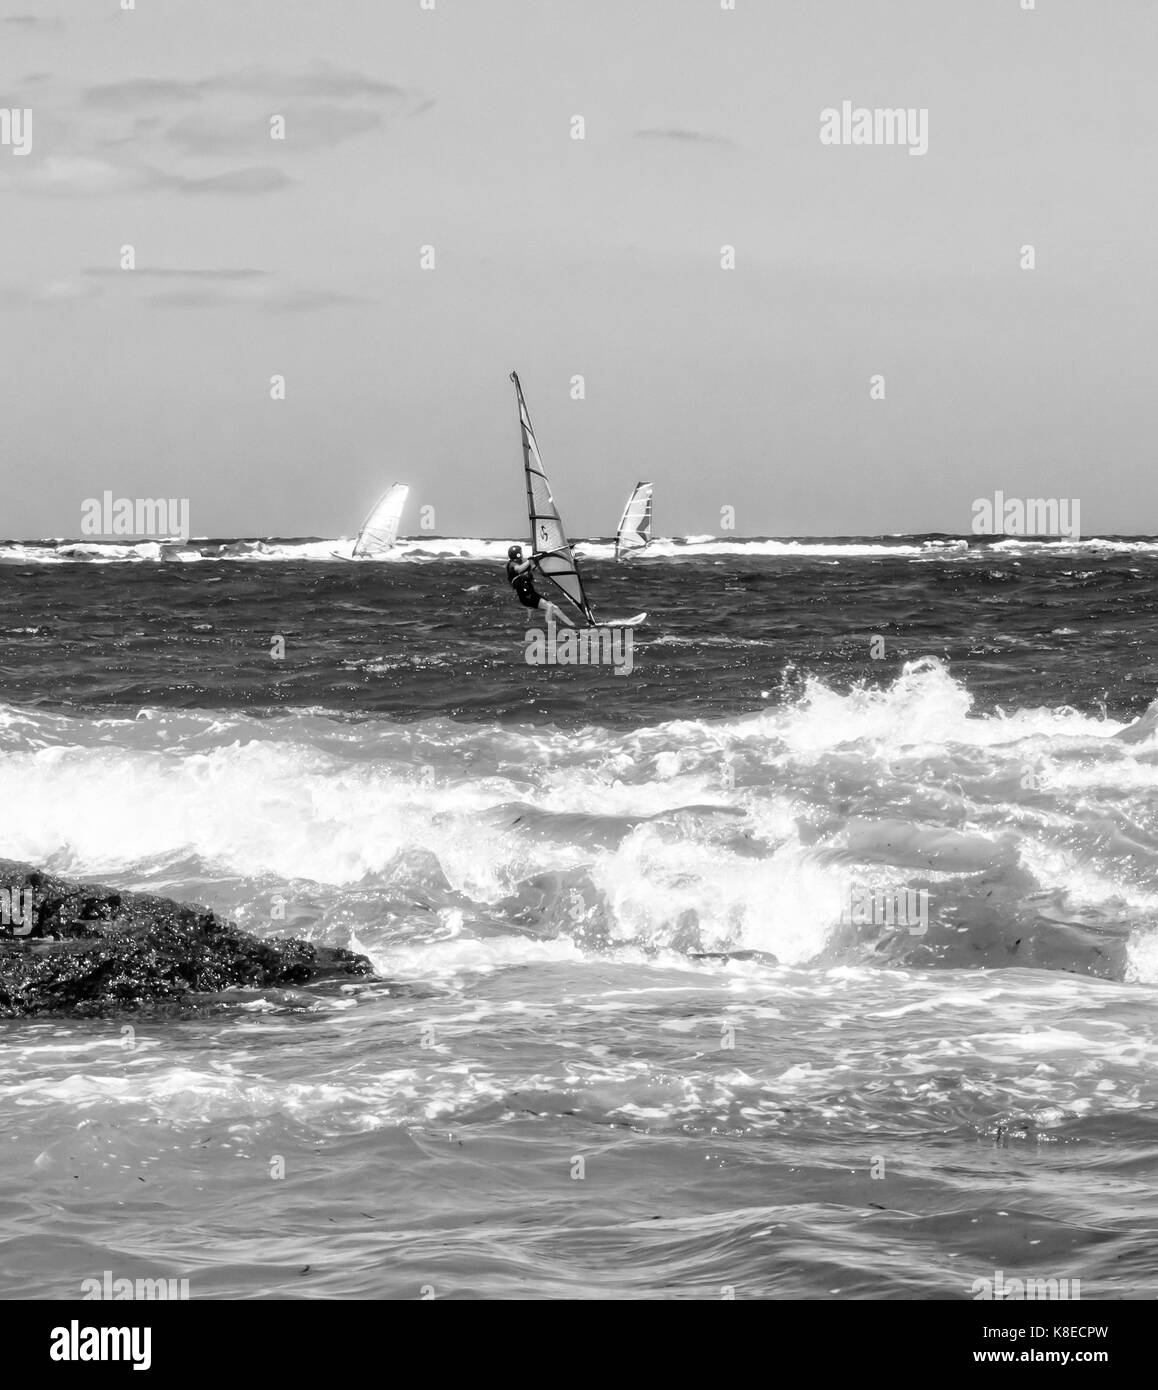 Windsurf in un giorno di tempesta. foto in bianco e nero. Foto Stock